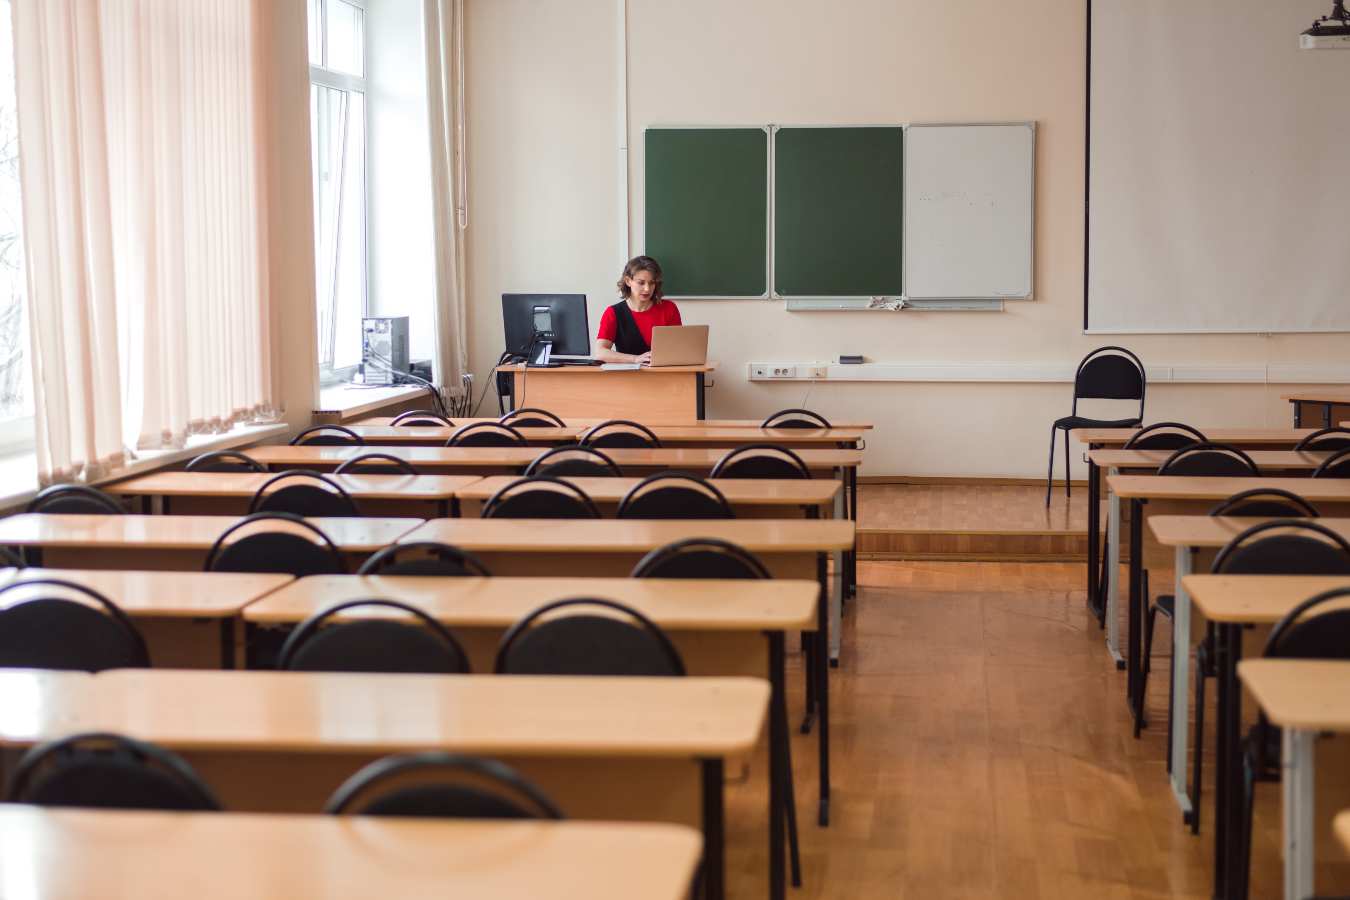 Strajk nauczycieli na początku roku szkolnego? “Będziemy walczyć o najlepsze rozwiązania dla polskiej edukacji”